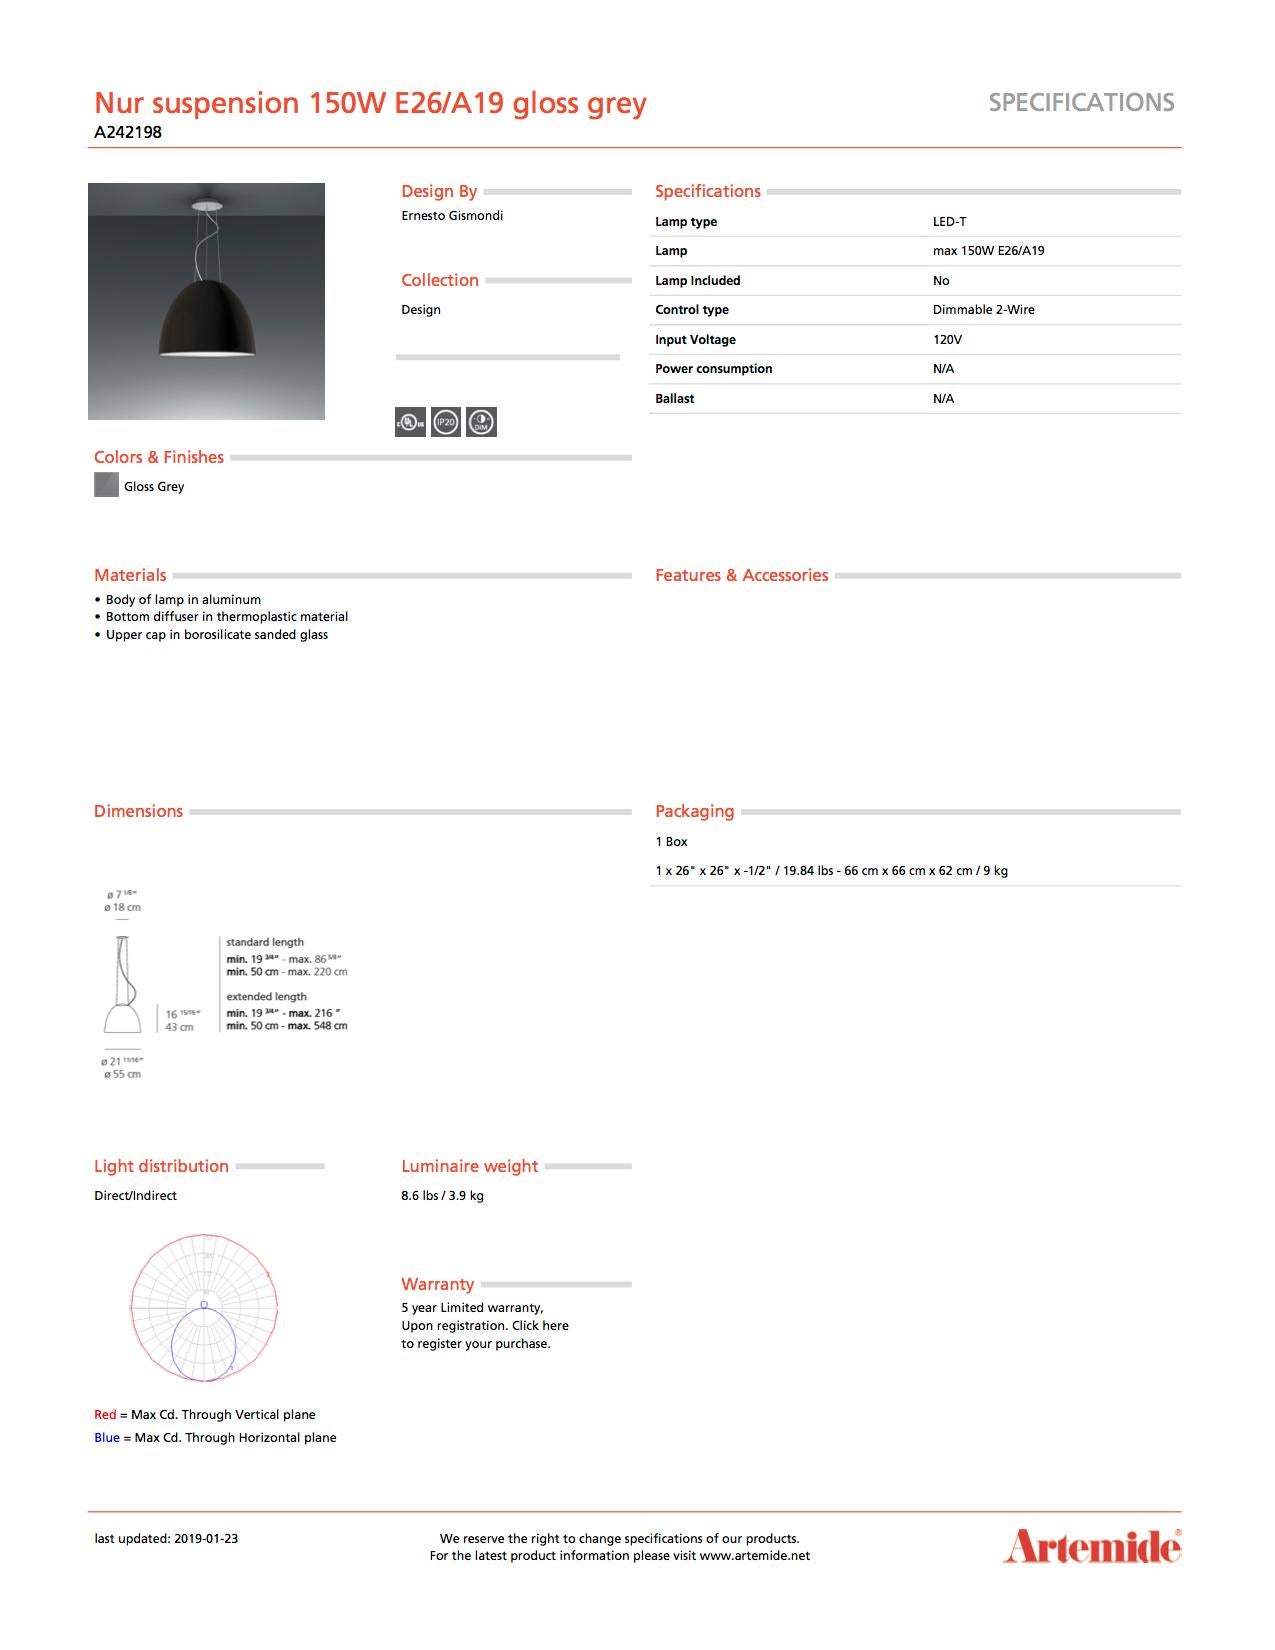 Artemide Nur Hängeleuchte 150W E26/A19 in glänzendem Grau (Italienisch) im Angebot